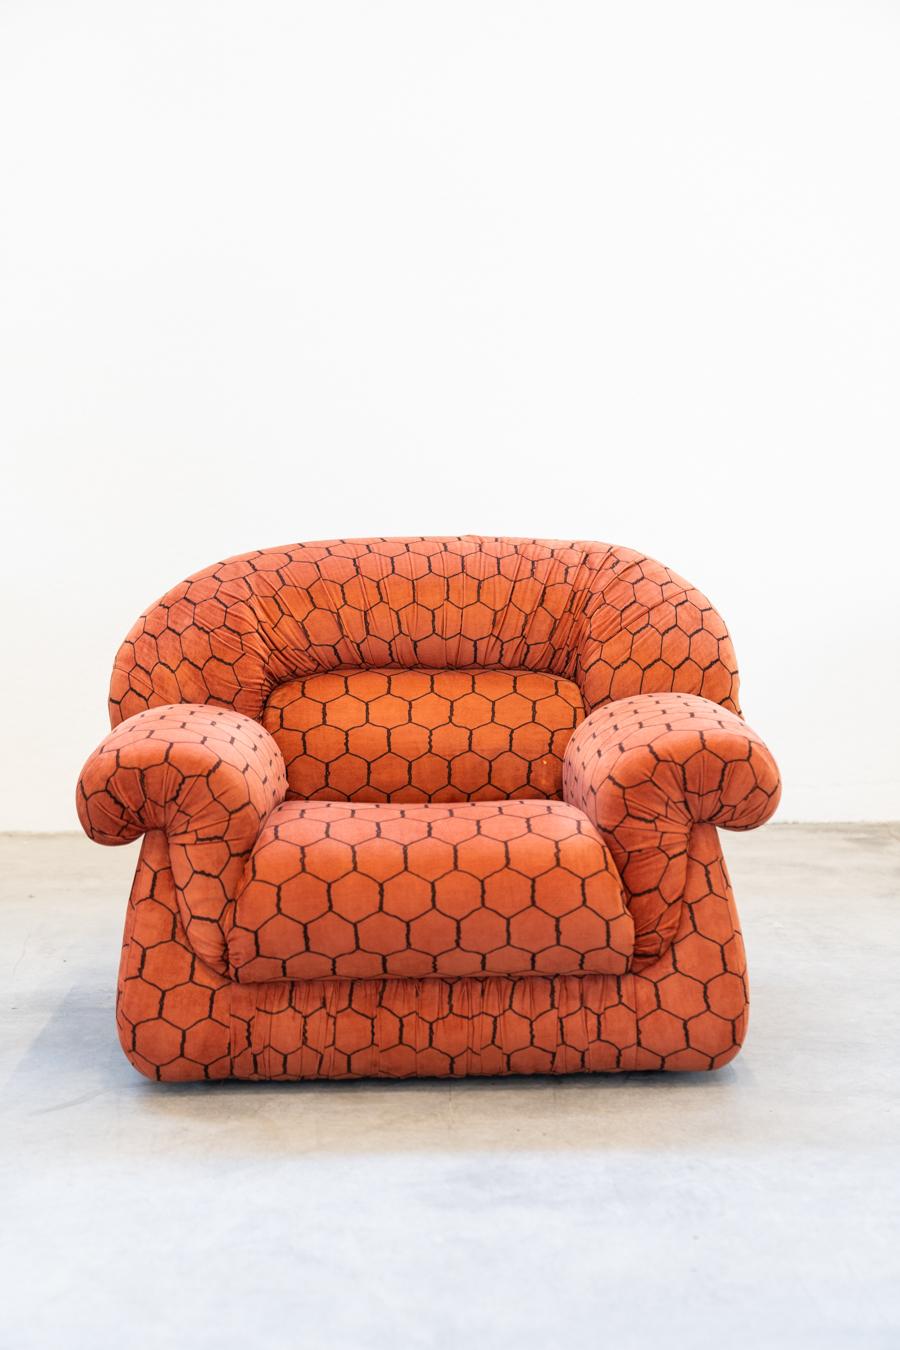 Vintage-Lounge, Club-Stil, bestehend aus 3-Sitzer-Sofa und 2 Sesseln, 				1970s
Sehr guter Zustand
Aus orangefarbenem Stoff, verziert mit sechseckigen Motiven in 	jeder Teil von ihnen.  
Sofa: H78 x B220 x T100
Sessel: H80 x B110 x T90
Kg gesamt